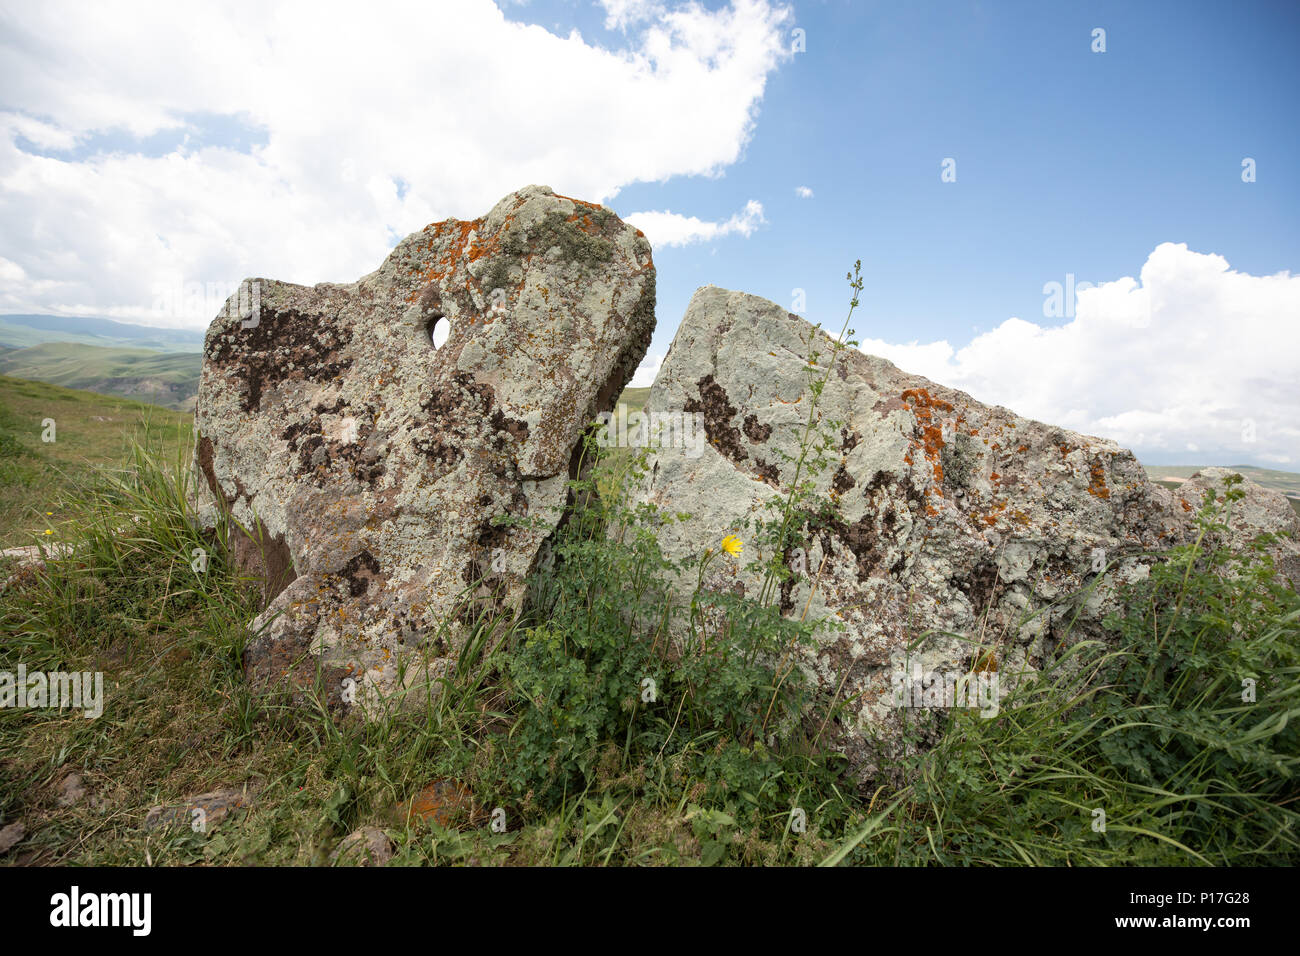 Formations en pierre ancienne Stonehenge Arménien : Karahunj un jour d'été. Sisian, Arménie. Banque D'Images